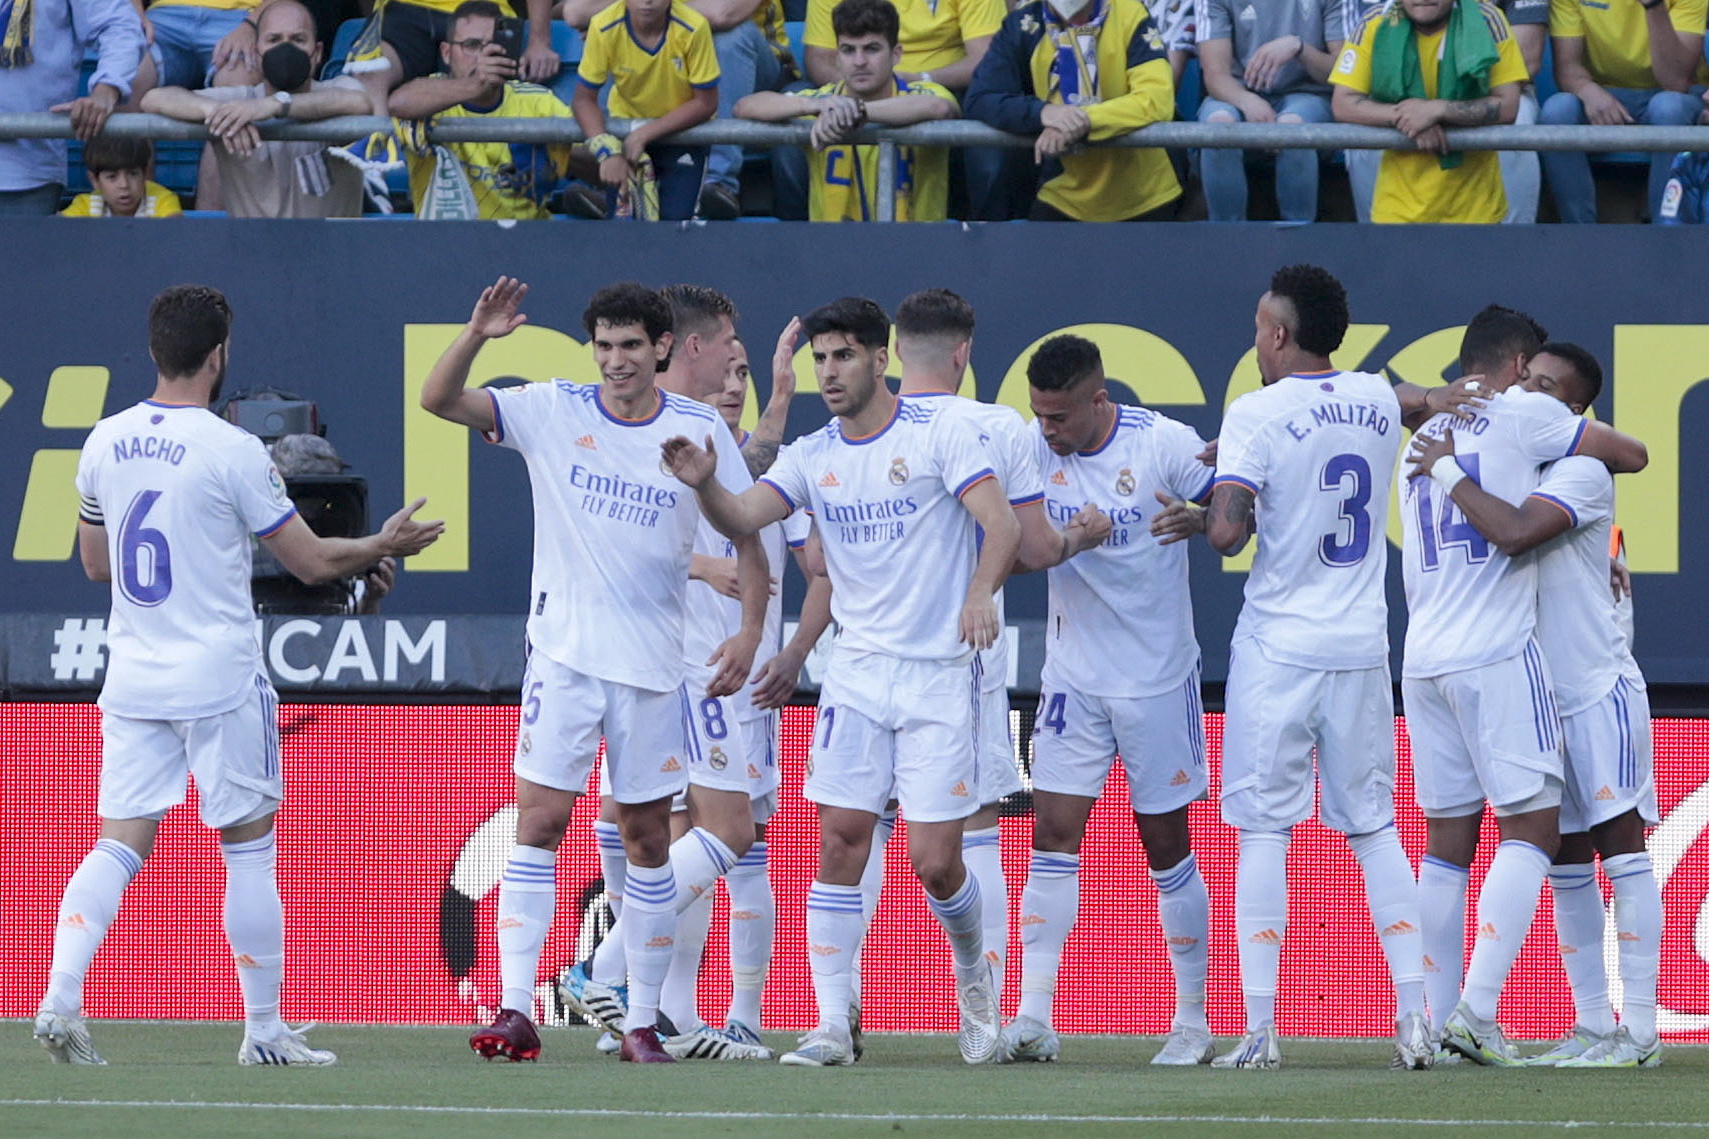 La Liga Matchday 9 odds and predictions - Villarreal USA